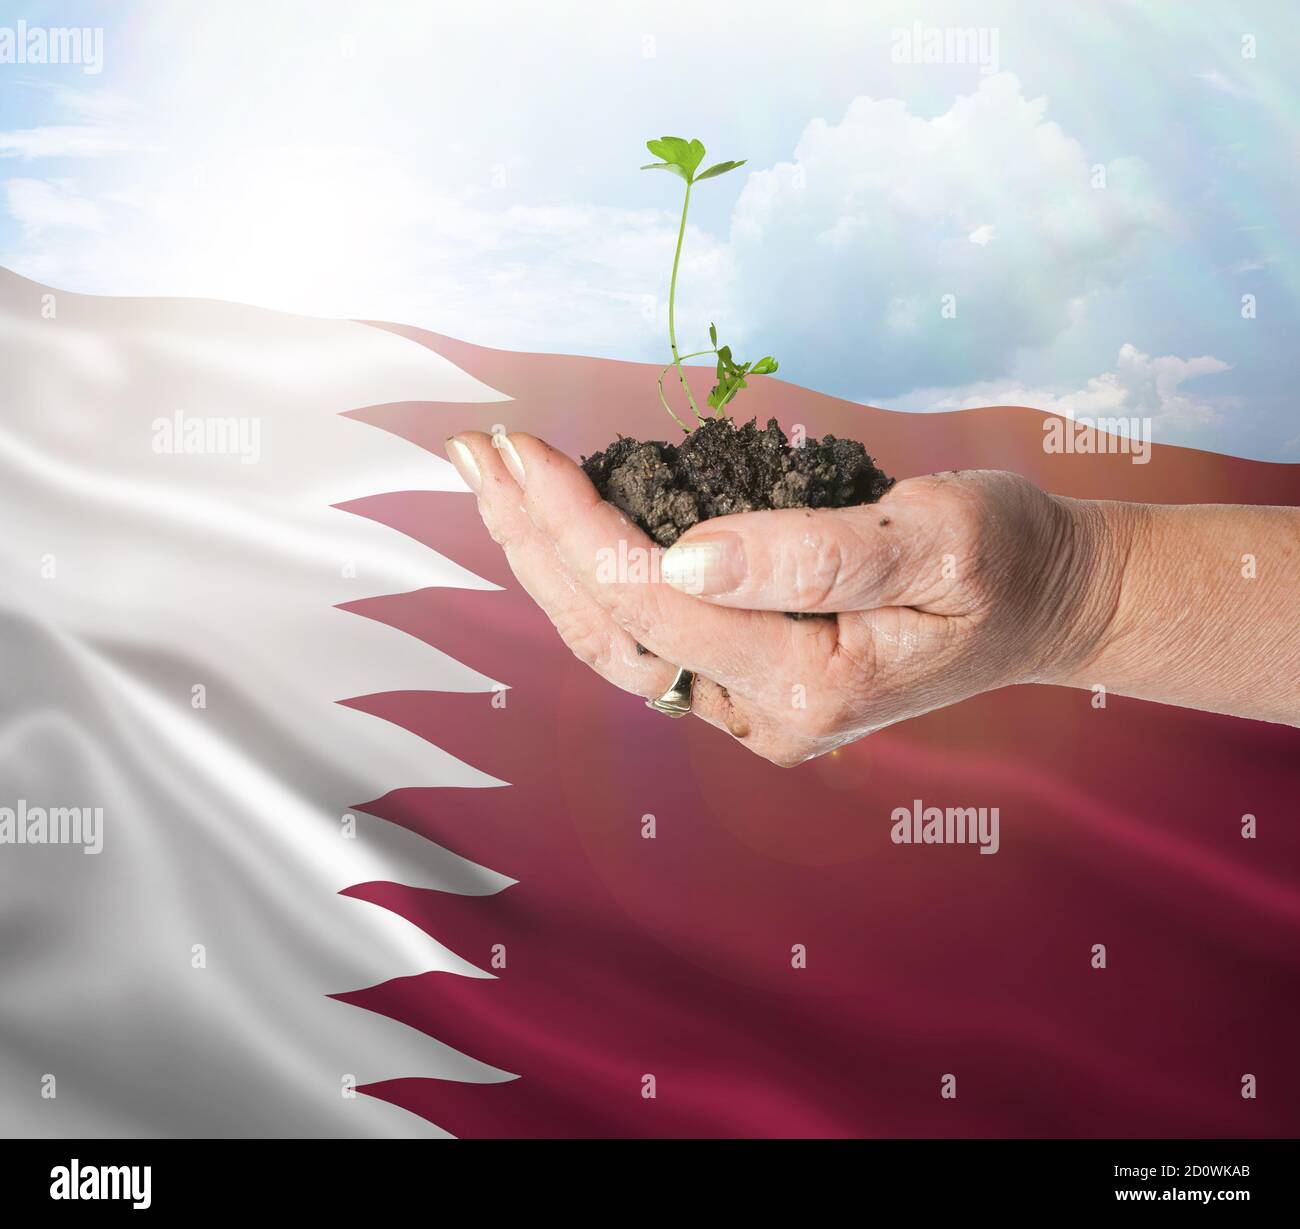 Qatar crecimiento y nuevo comienzo. Concepto de energía renovable verde y ecología. Mano sosteniendo planta joven. Foto de stock